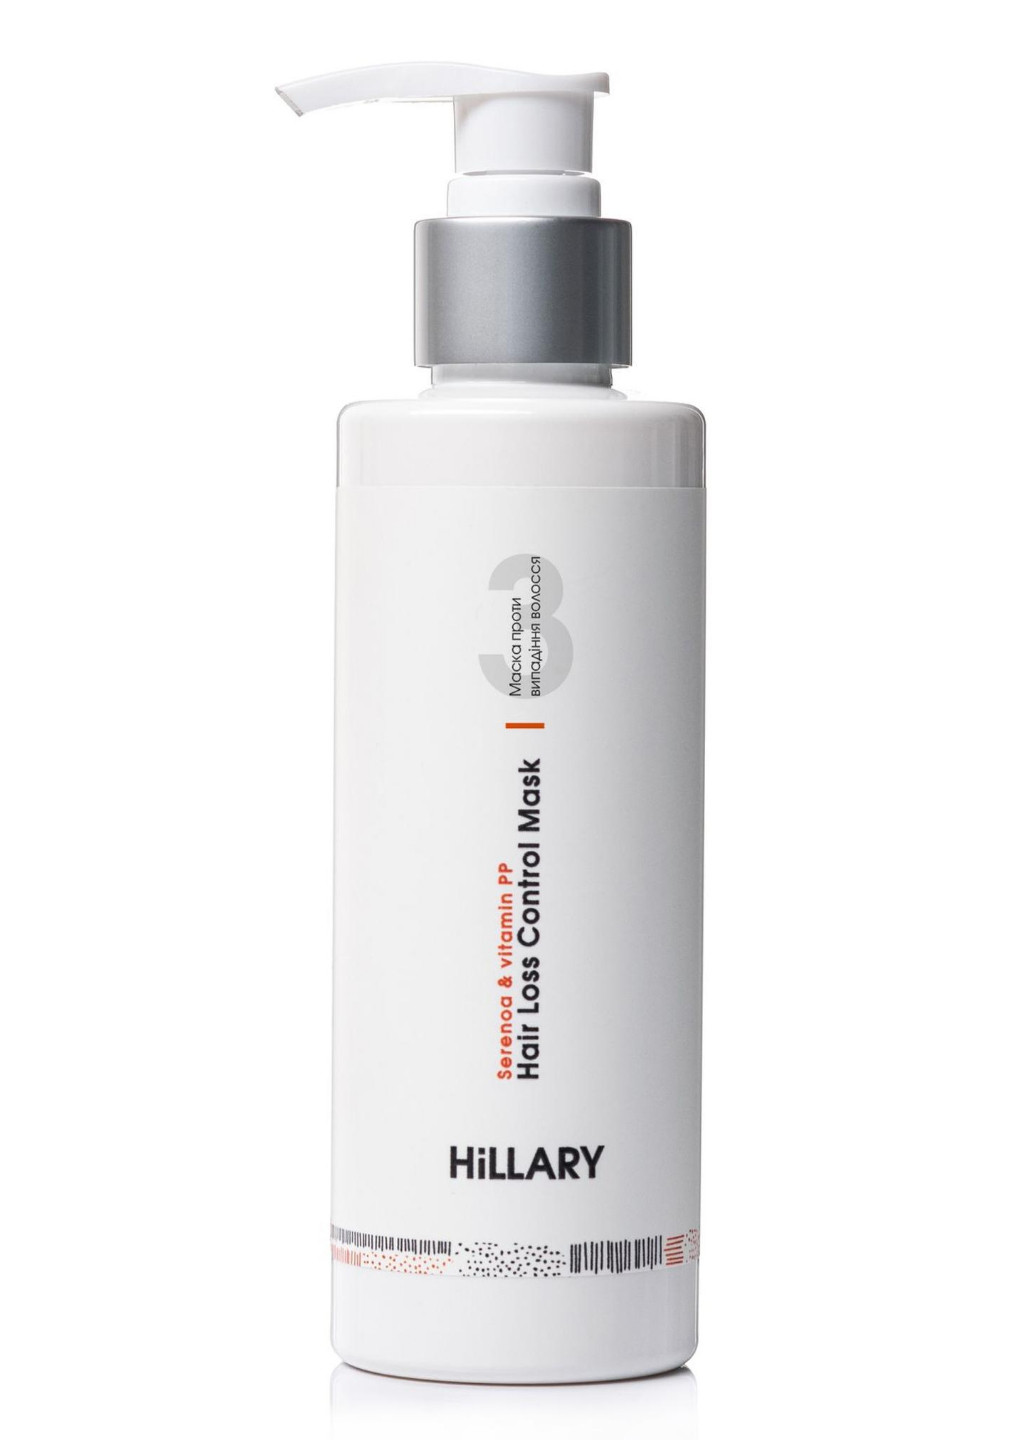 Маска против выпадения волос и сыворотка для волос Concentrate Serenoa + Аргановое масло Hillary (256527885)